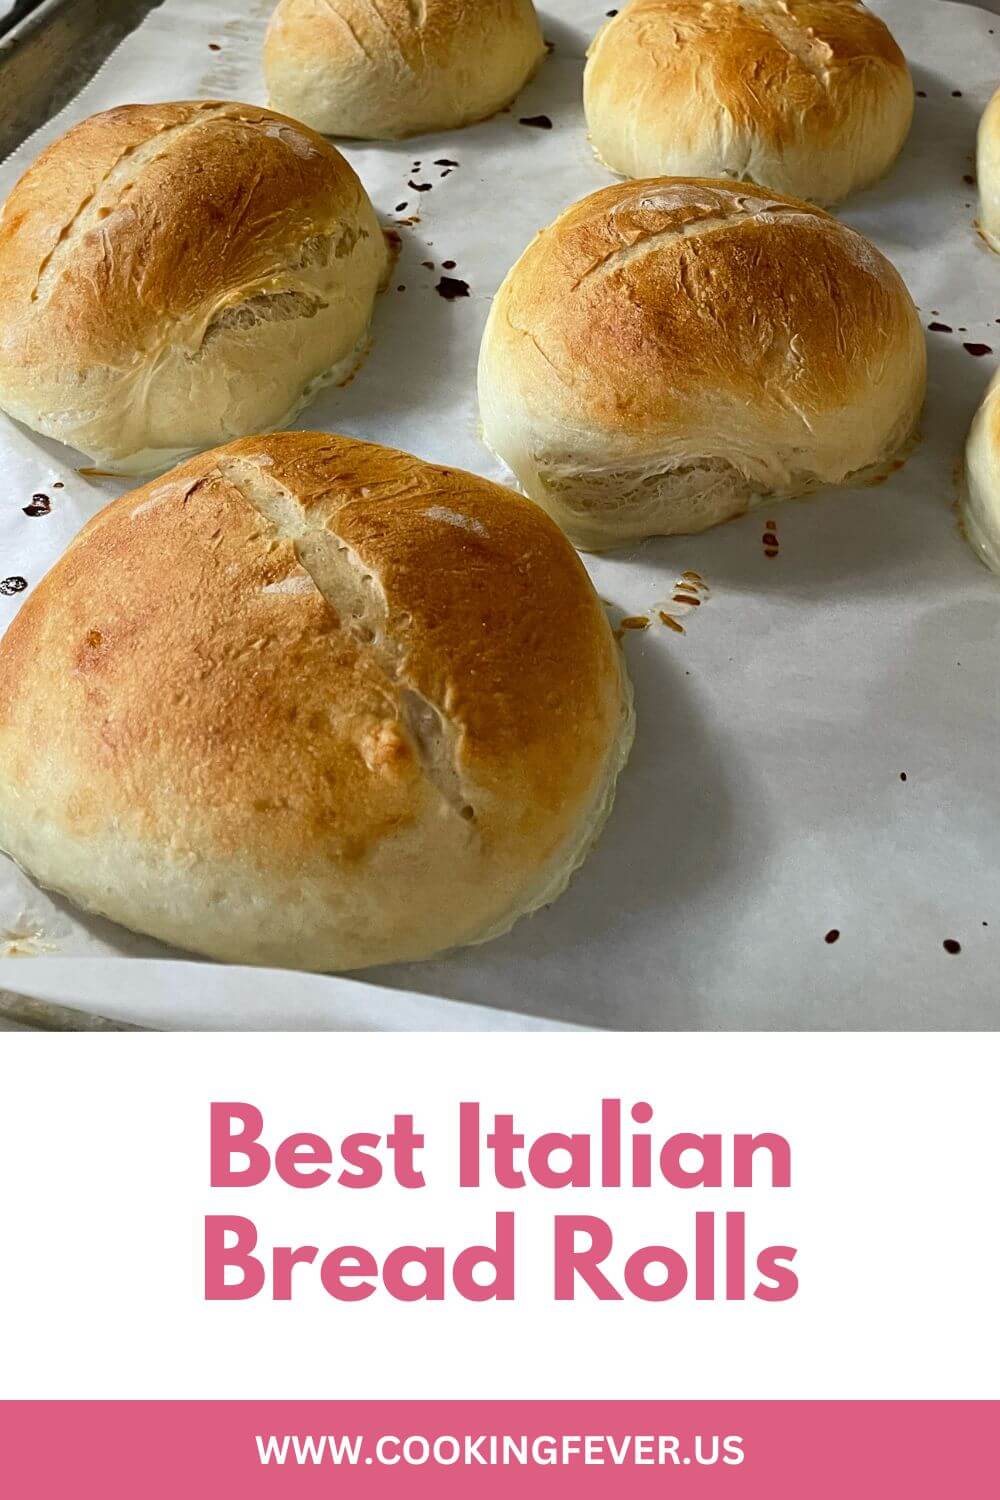 Best Italian Bread Rolls